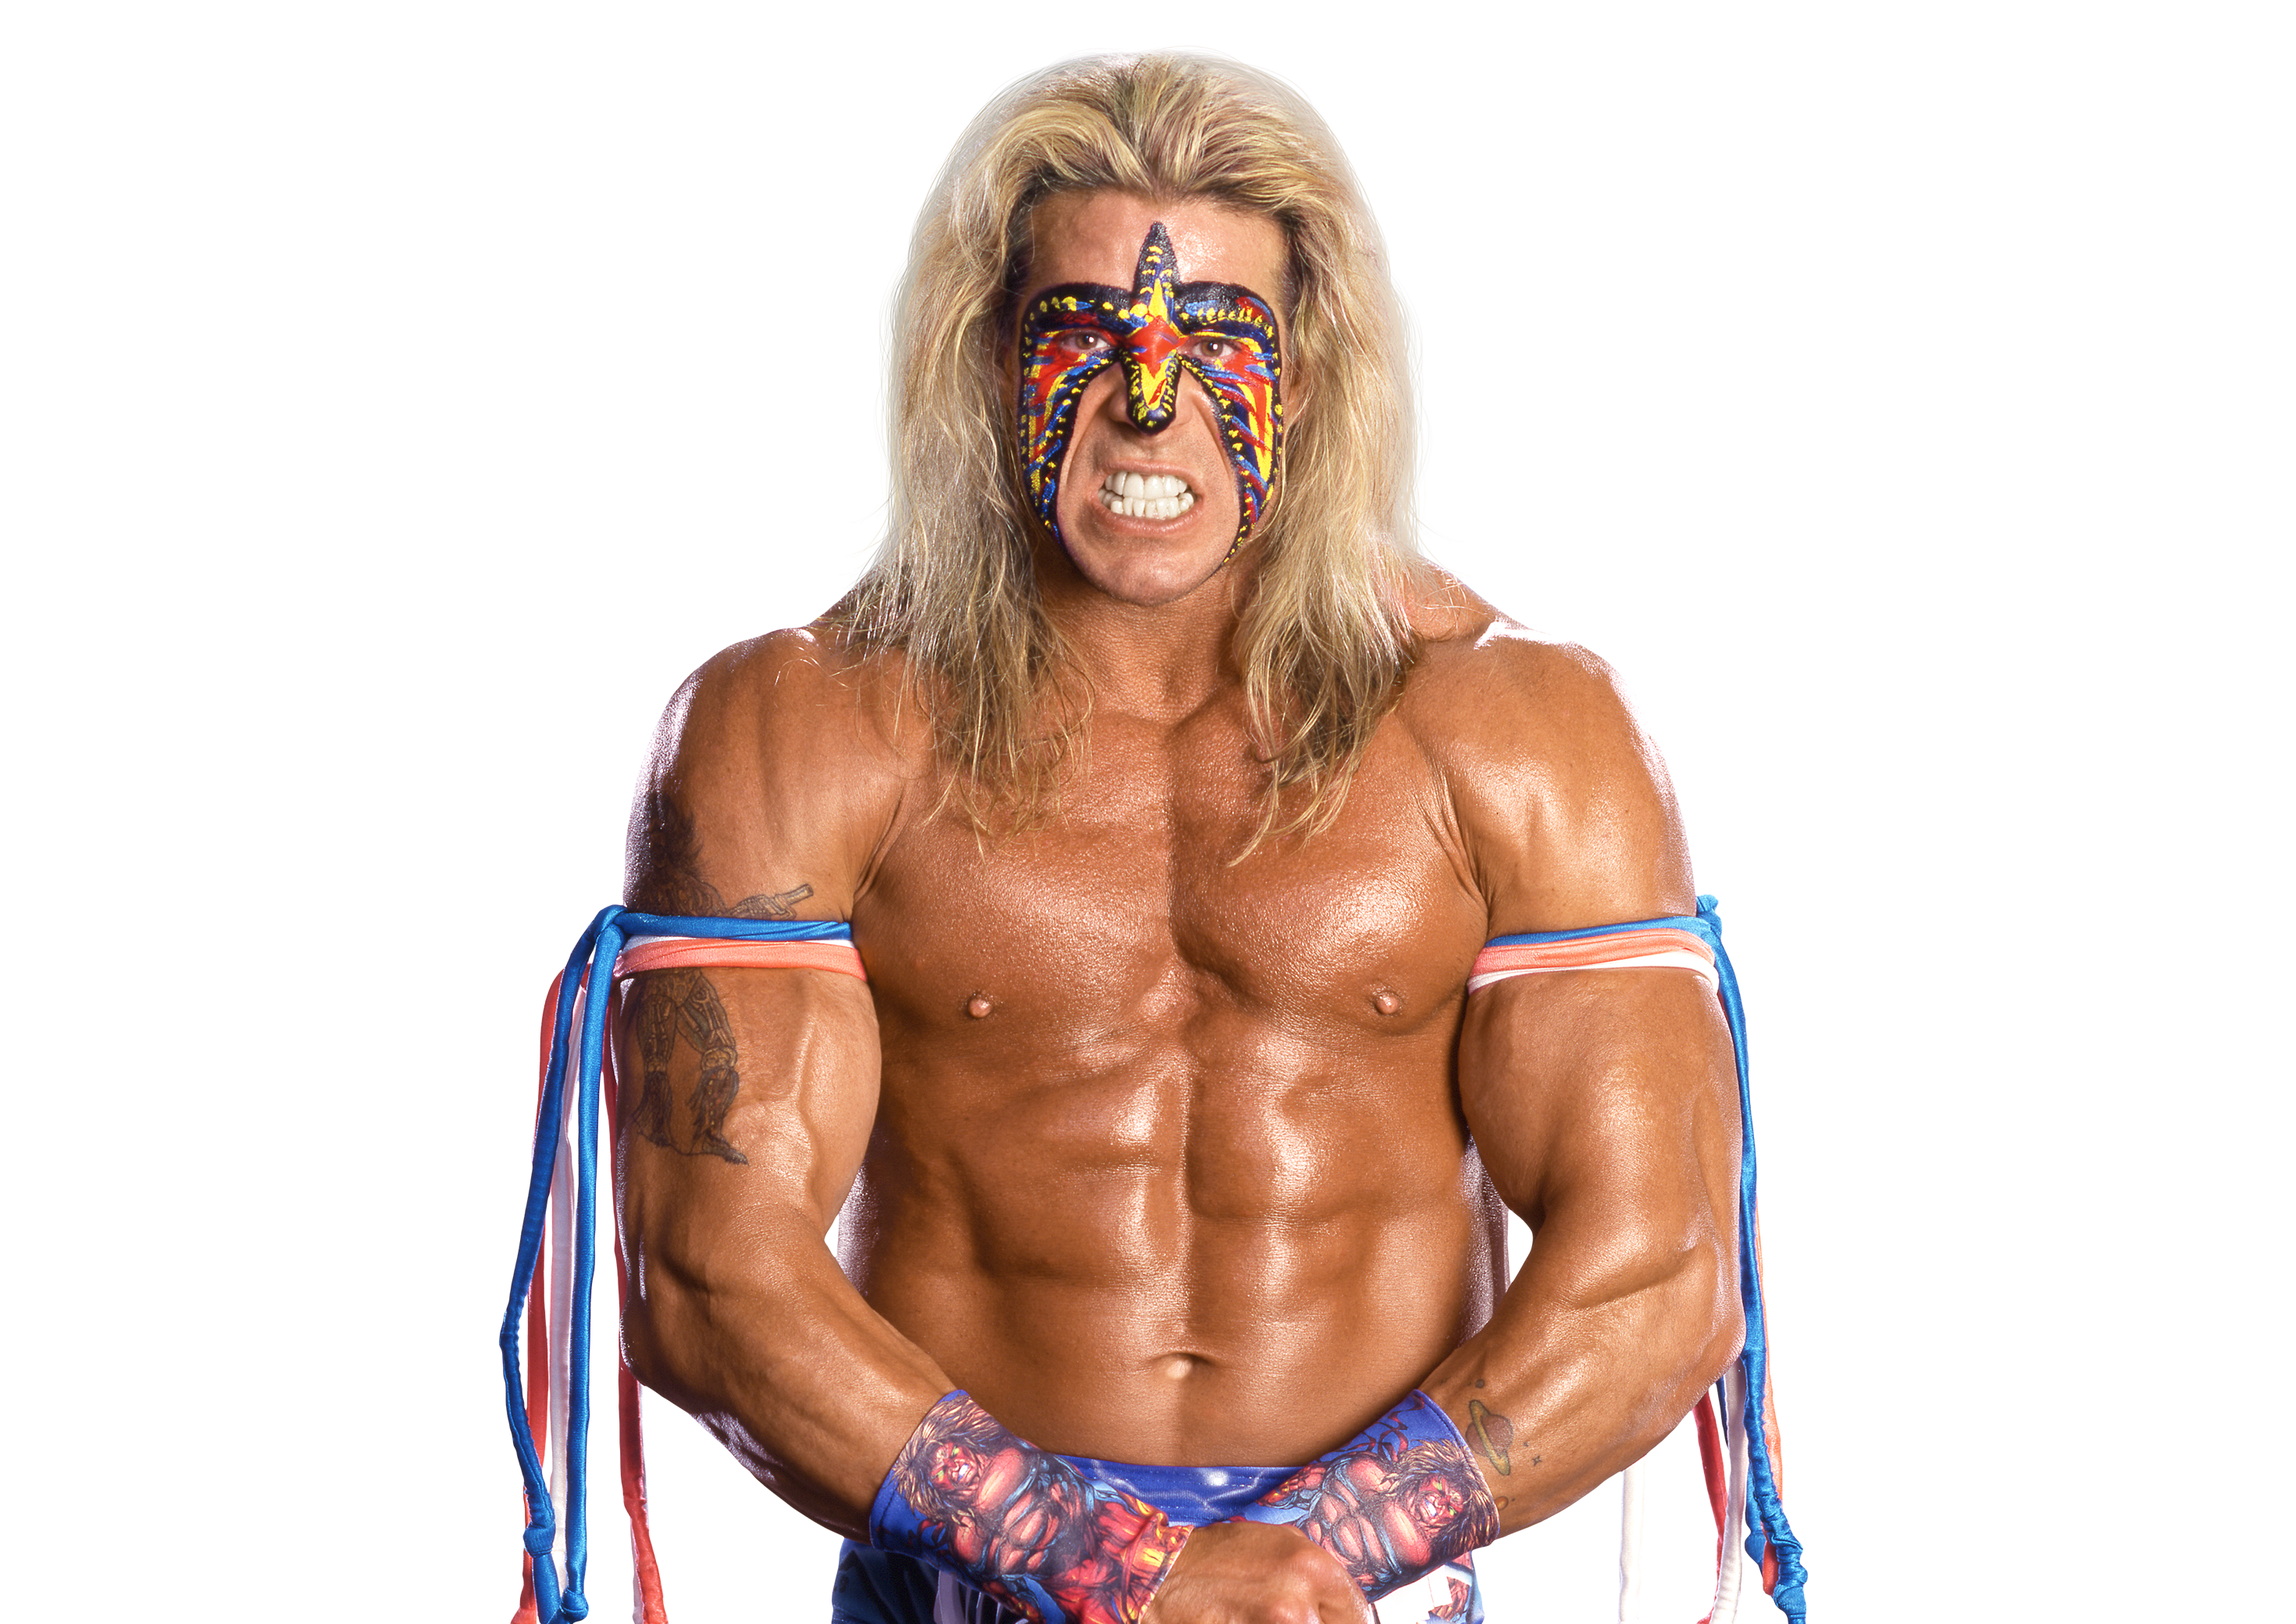 grupo litro pegamento Ultimate Warrior Bio Information - WWE | FOX Sports